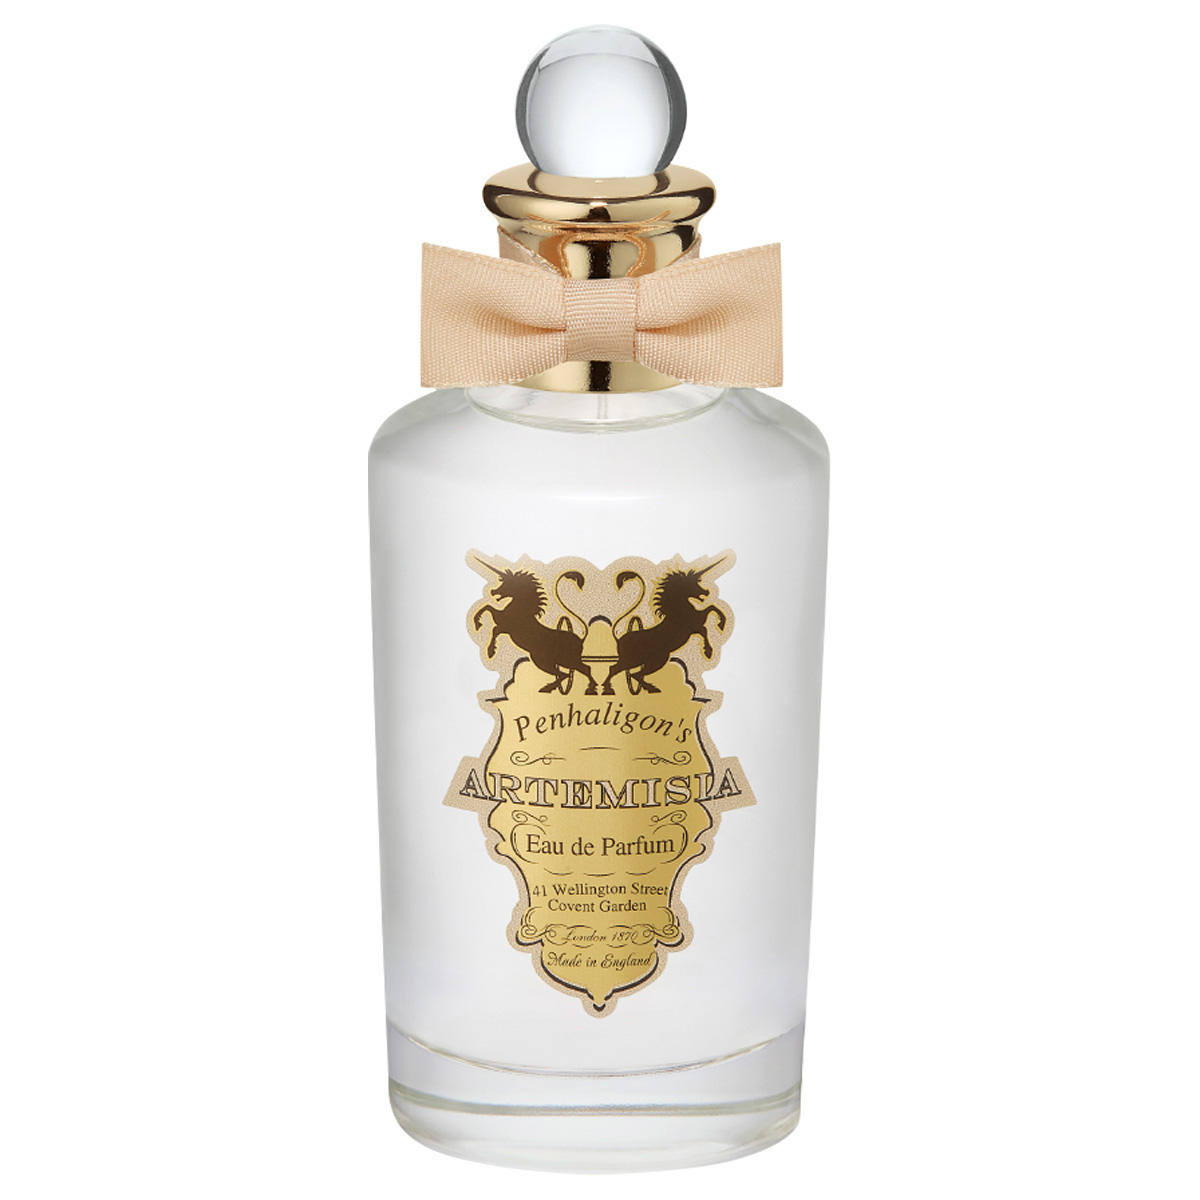 PENHALIGON'S Artemisia Eau de Parfum 100 ml - 1